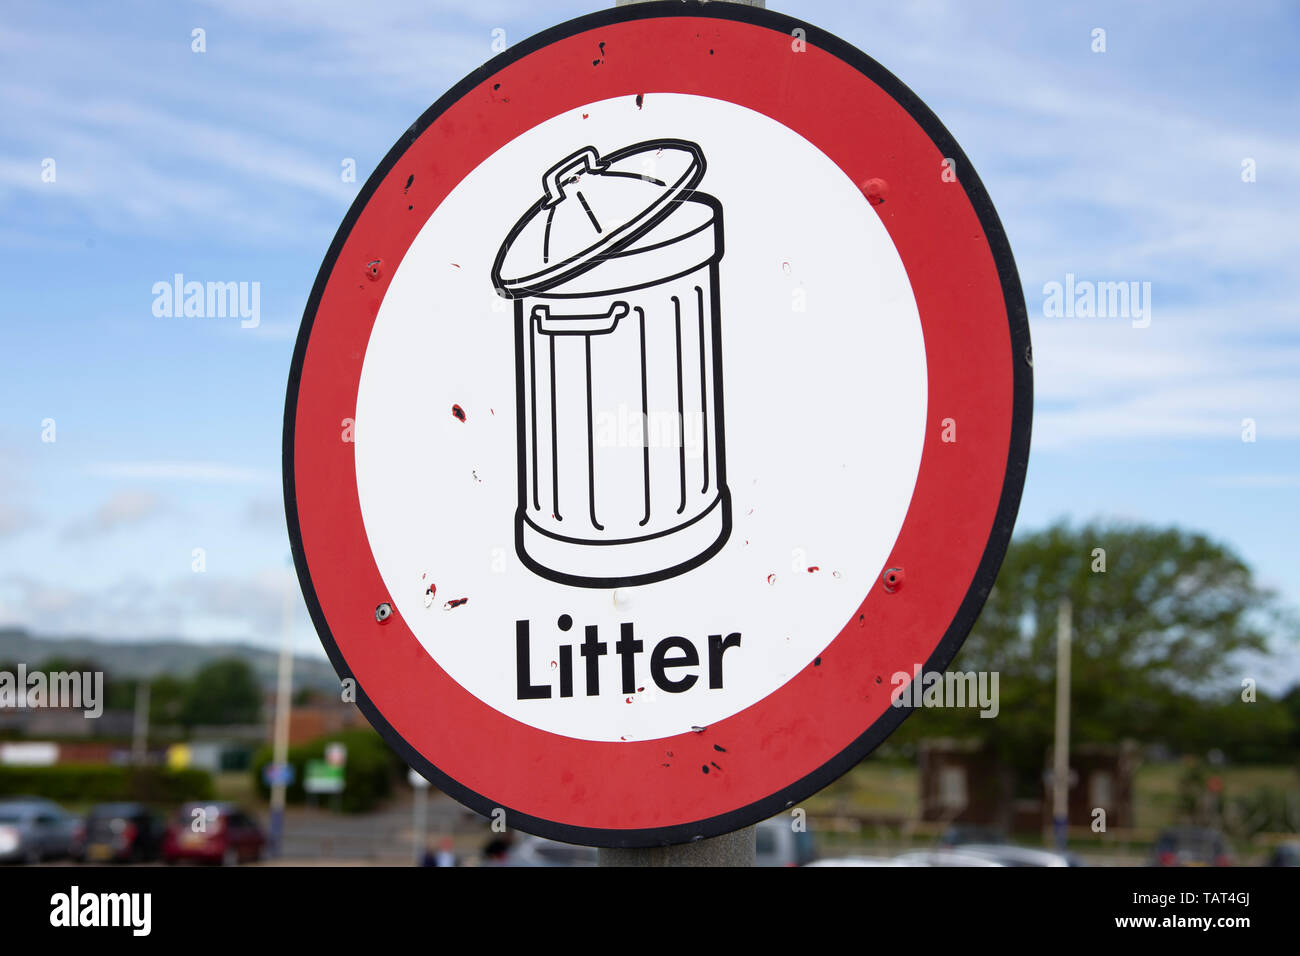 Litter bin sign against blue sky Stock Photo